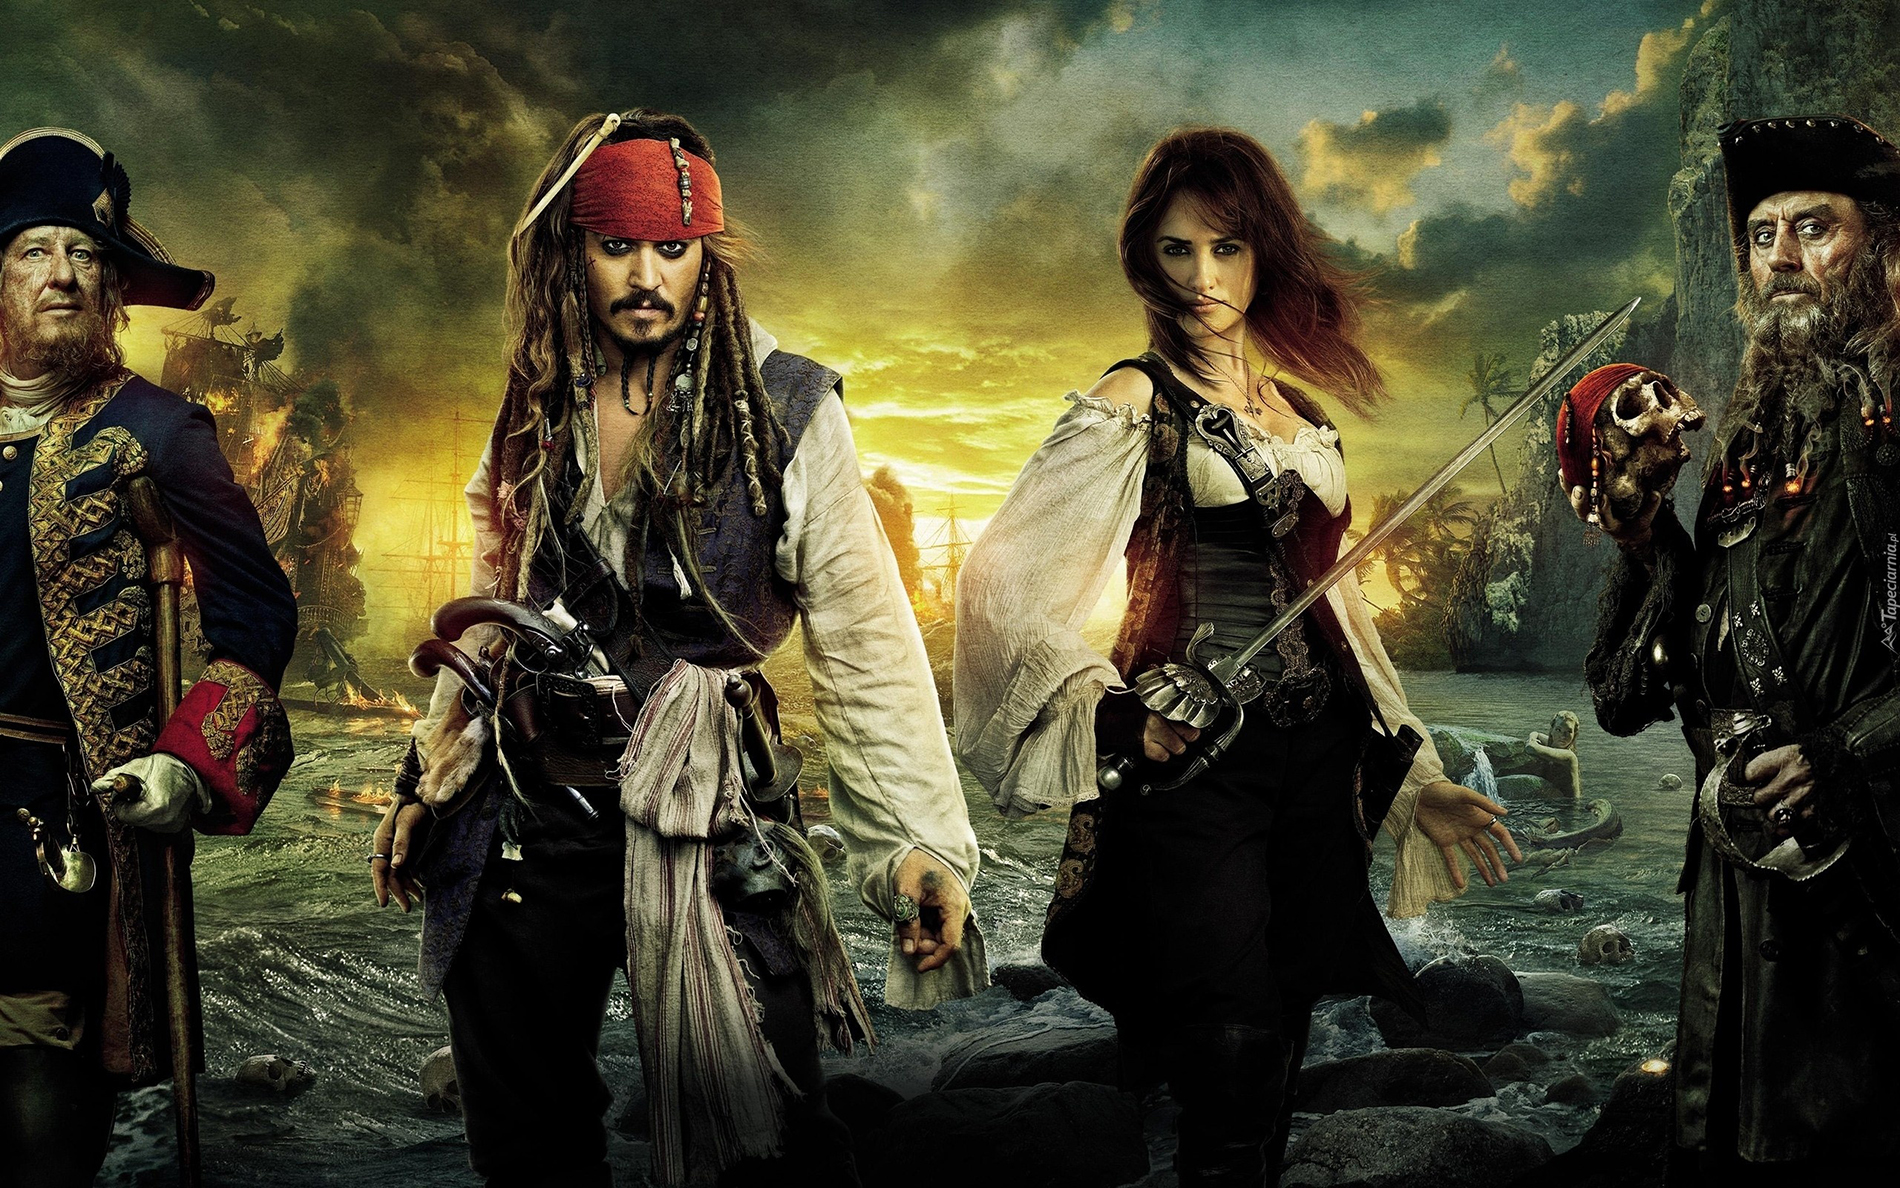 Wielki powrót: Piraci z Karaibów